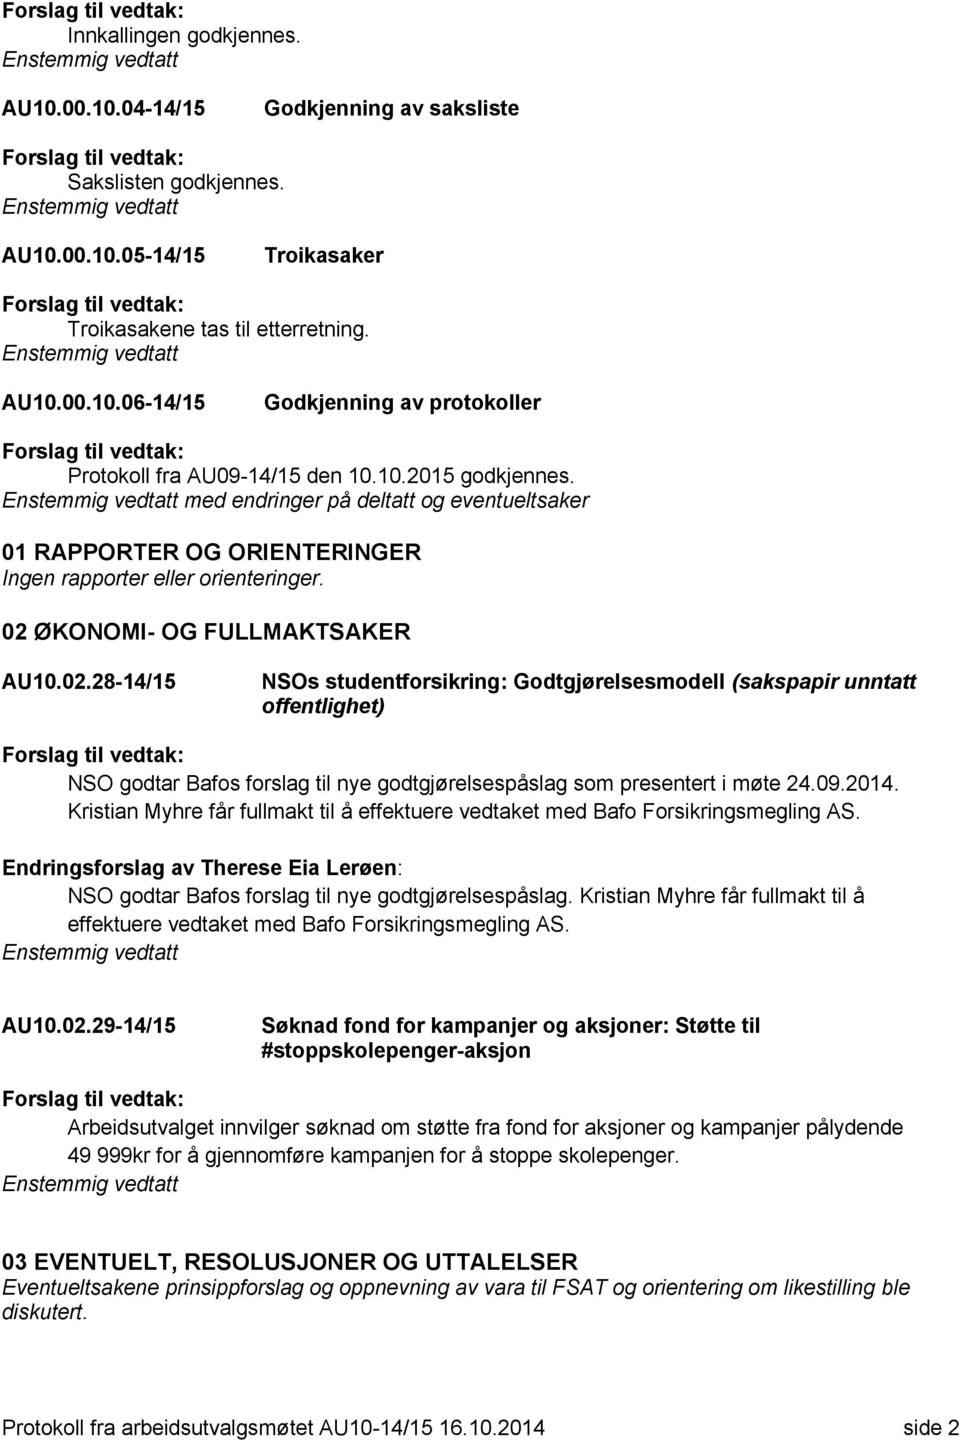 ØKONOMI- OG FULLMAKTSAKER AU10.02.28-14/15 NSOs studentforsikring: Godtgjørelsesmodell (sakspapir unntatt offentlighet) NSO godtar Bafos forslag til nye godtgjørelsespåslag som presentert i møte 24.